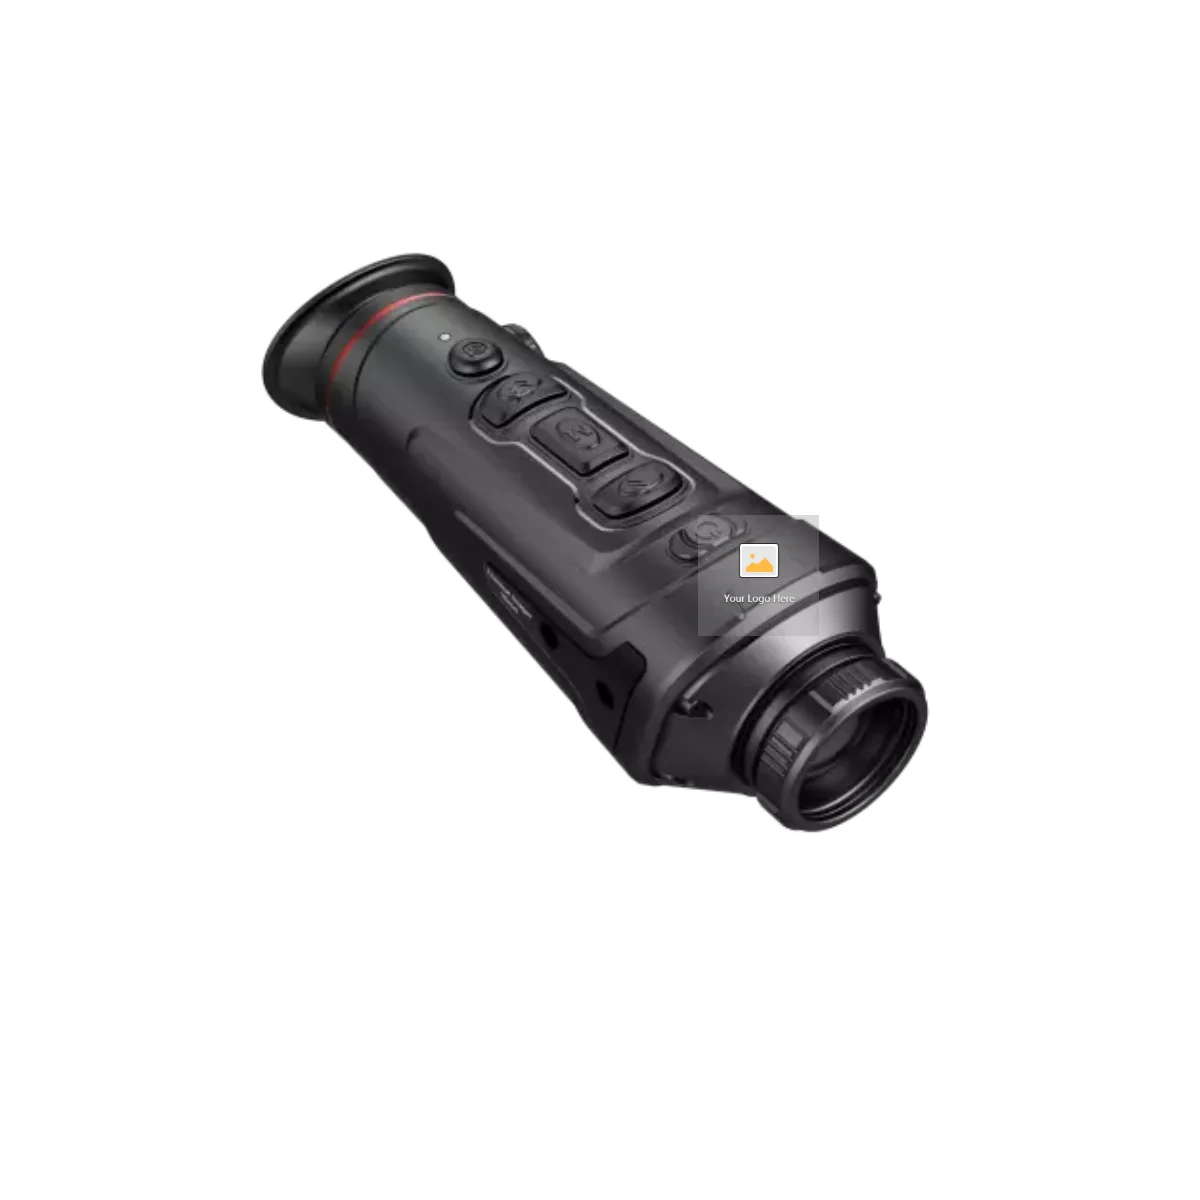 

Направляющий TrackIR 35 мм Инфракрасный цифровой Монокуляр ночного видения с диапазоном охотничий тепловизор для охоты